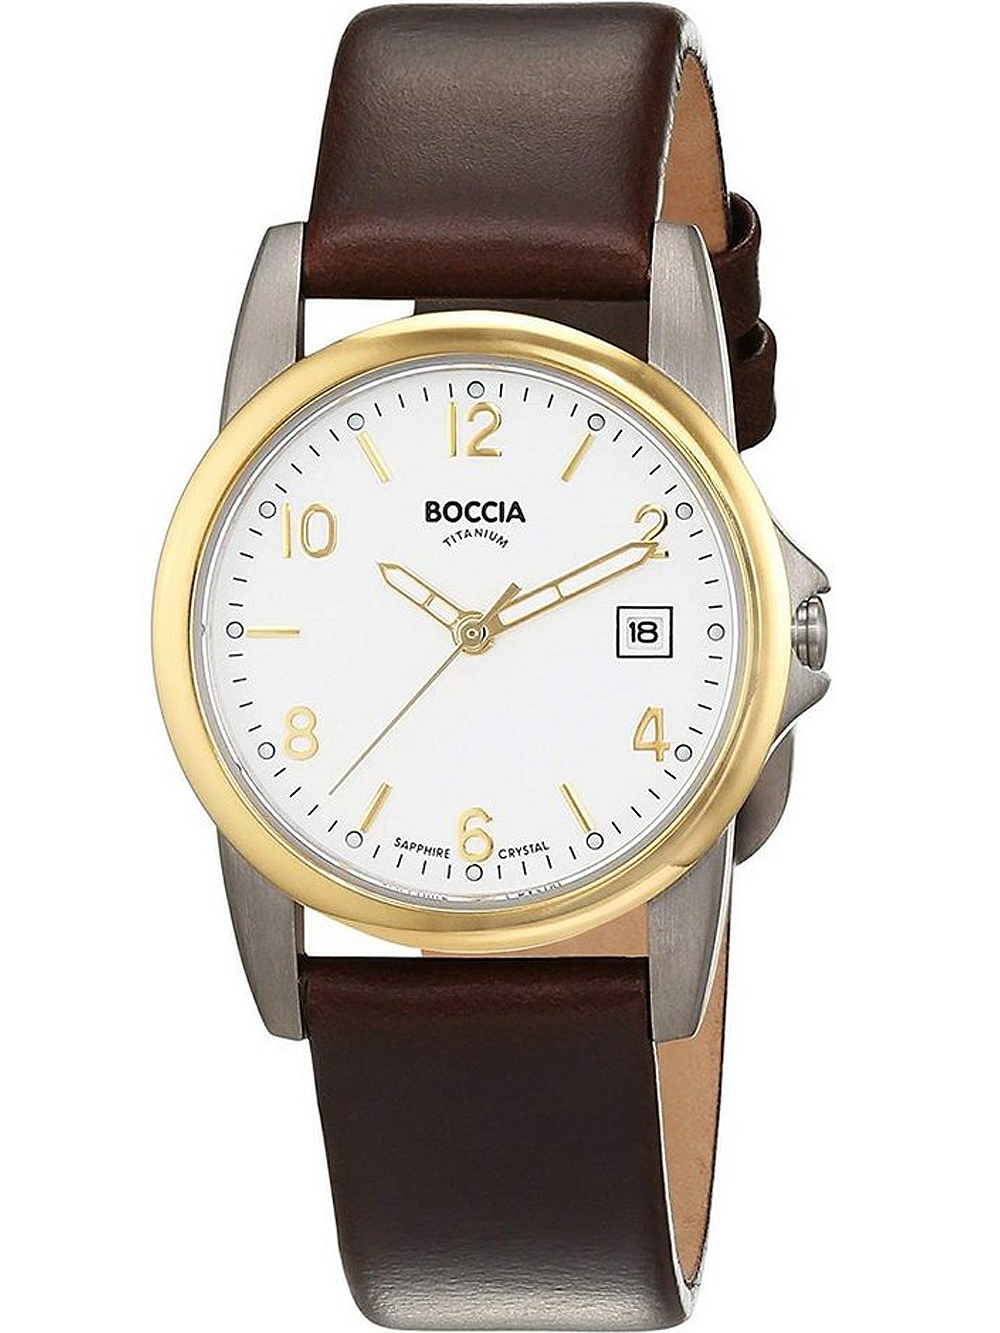 Dámské hodinky Boccia 3298-05 ladies watch titanium 30mm 5ATM